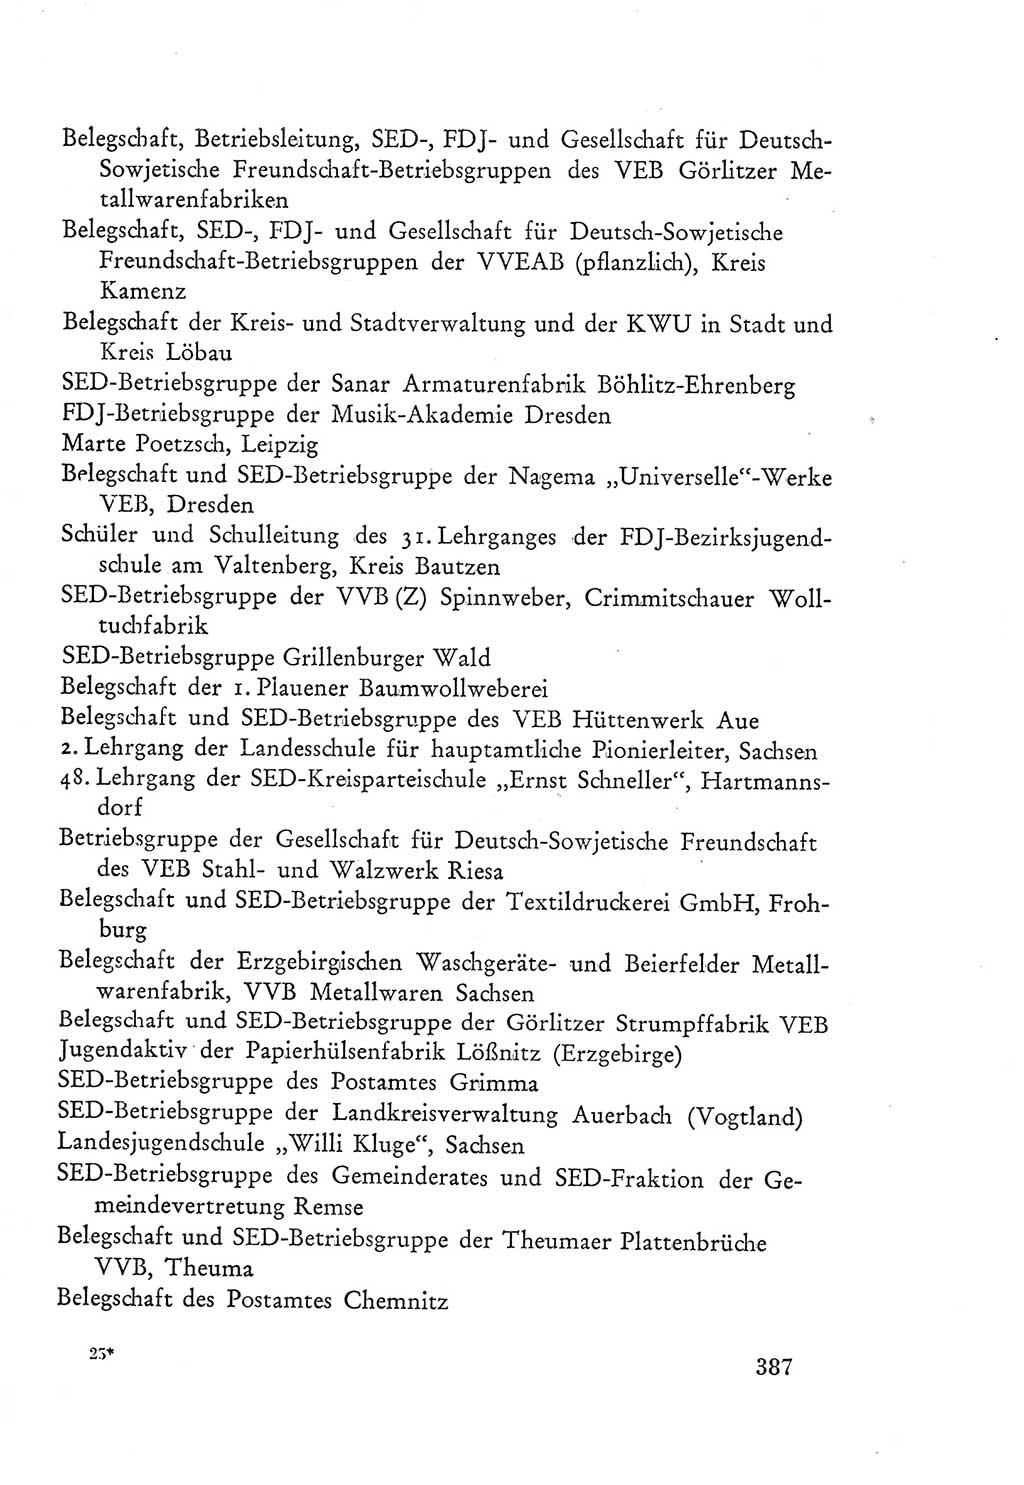 Protokoll der Verhandlungen des Ⅲ. Parteitages der Sozialistischen Einheitspartei Deutschlands (SED) [Deutsche Demokratische Republik (DDR)] 1950, Band 2, Seite 387 (Prot. Verh. Ⅲ. PT SED DDR 1950, Bd. 2, S. 387)